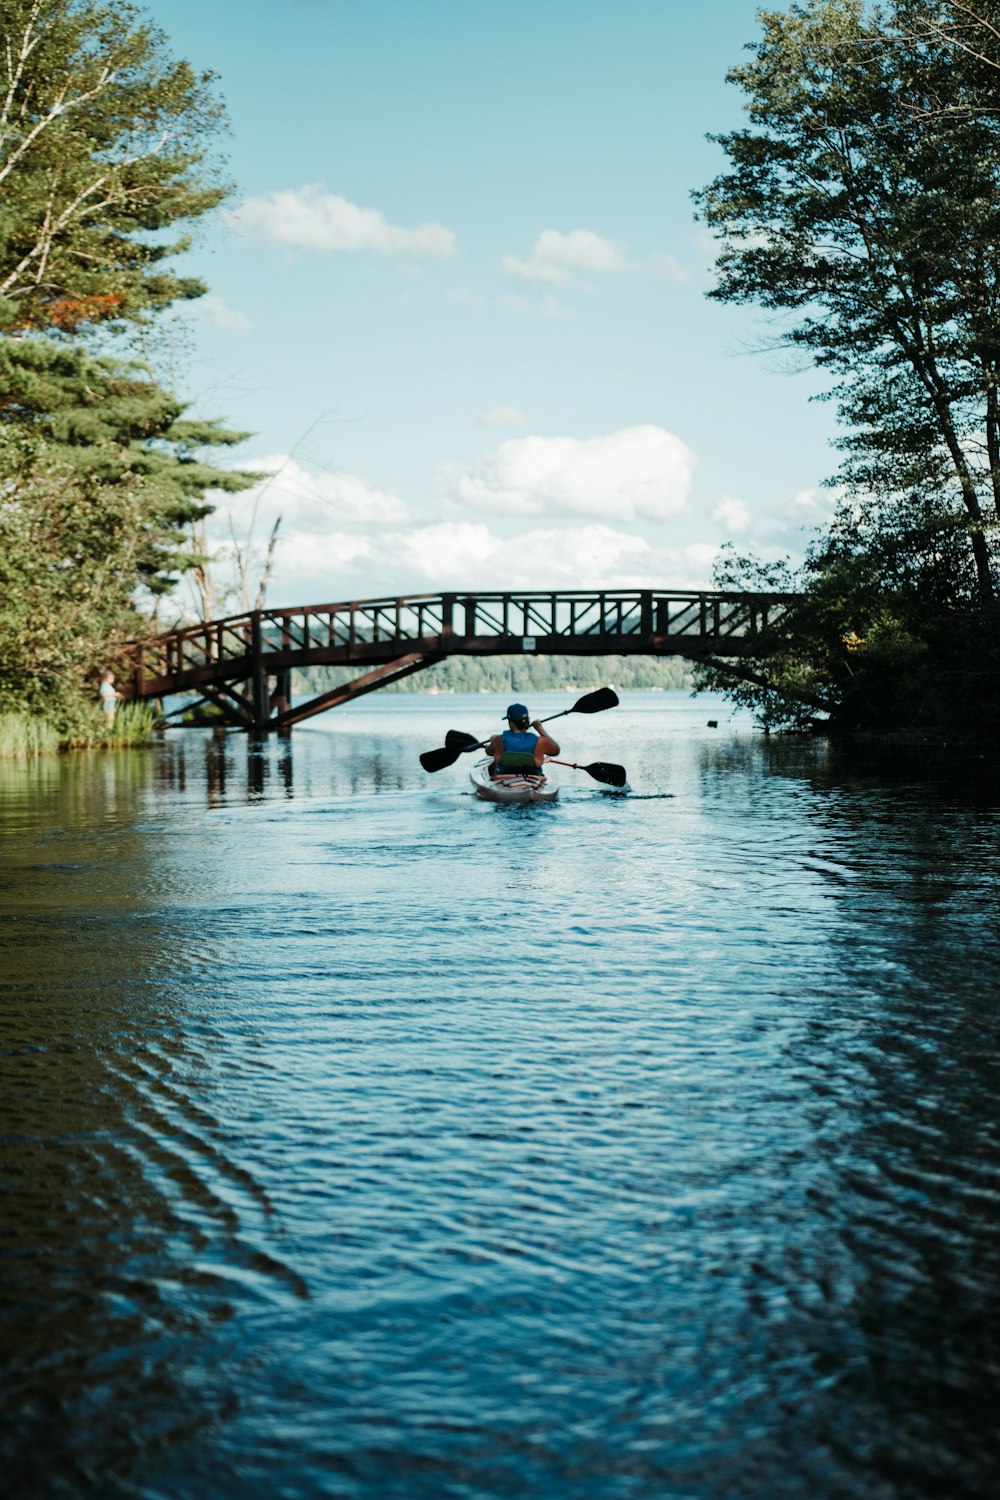 man riding on kayak on river under bridge during daytime